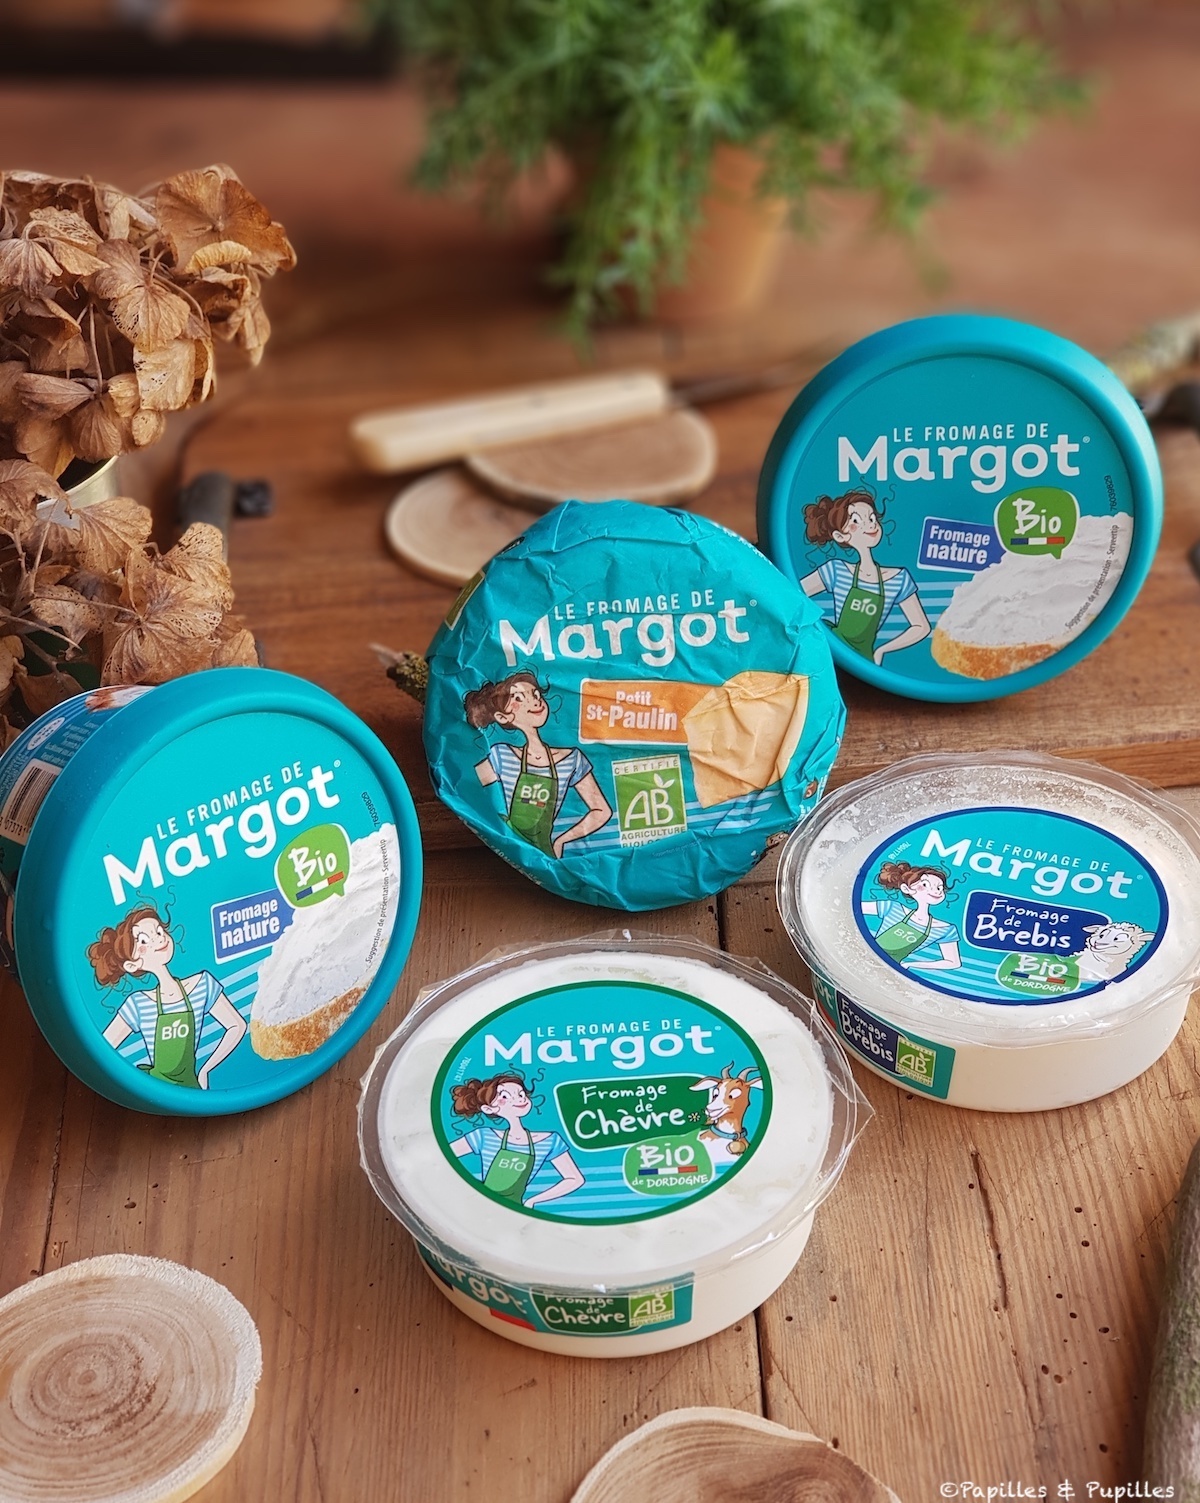 Le fromage de Margot